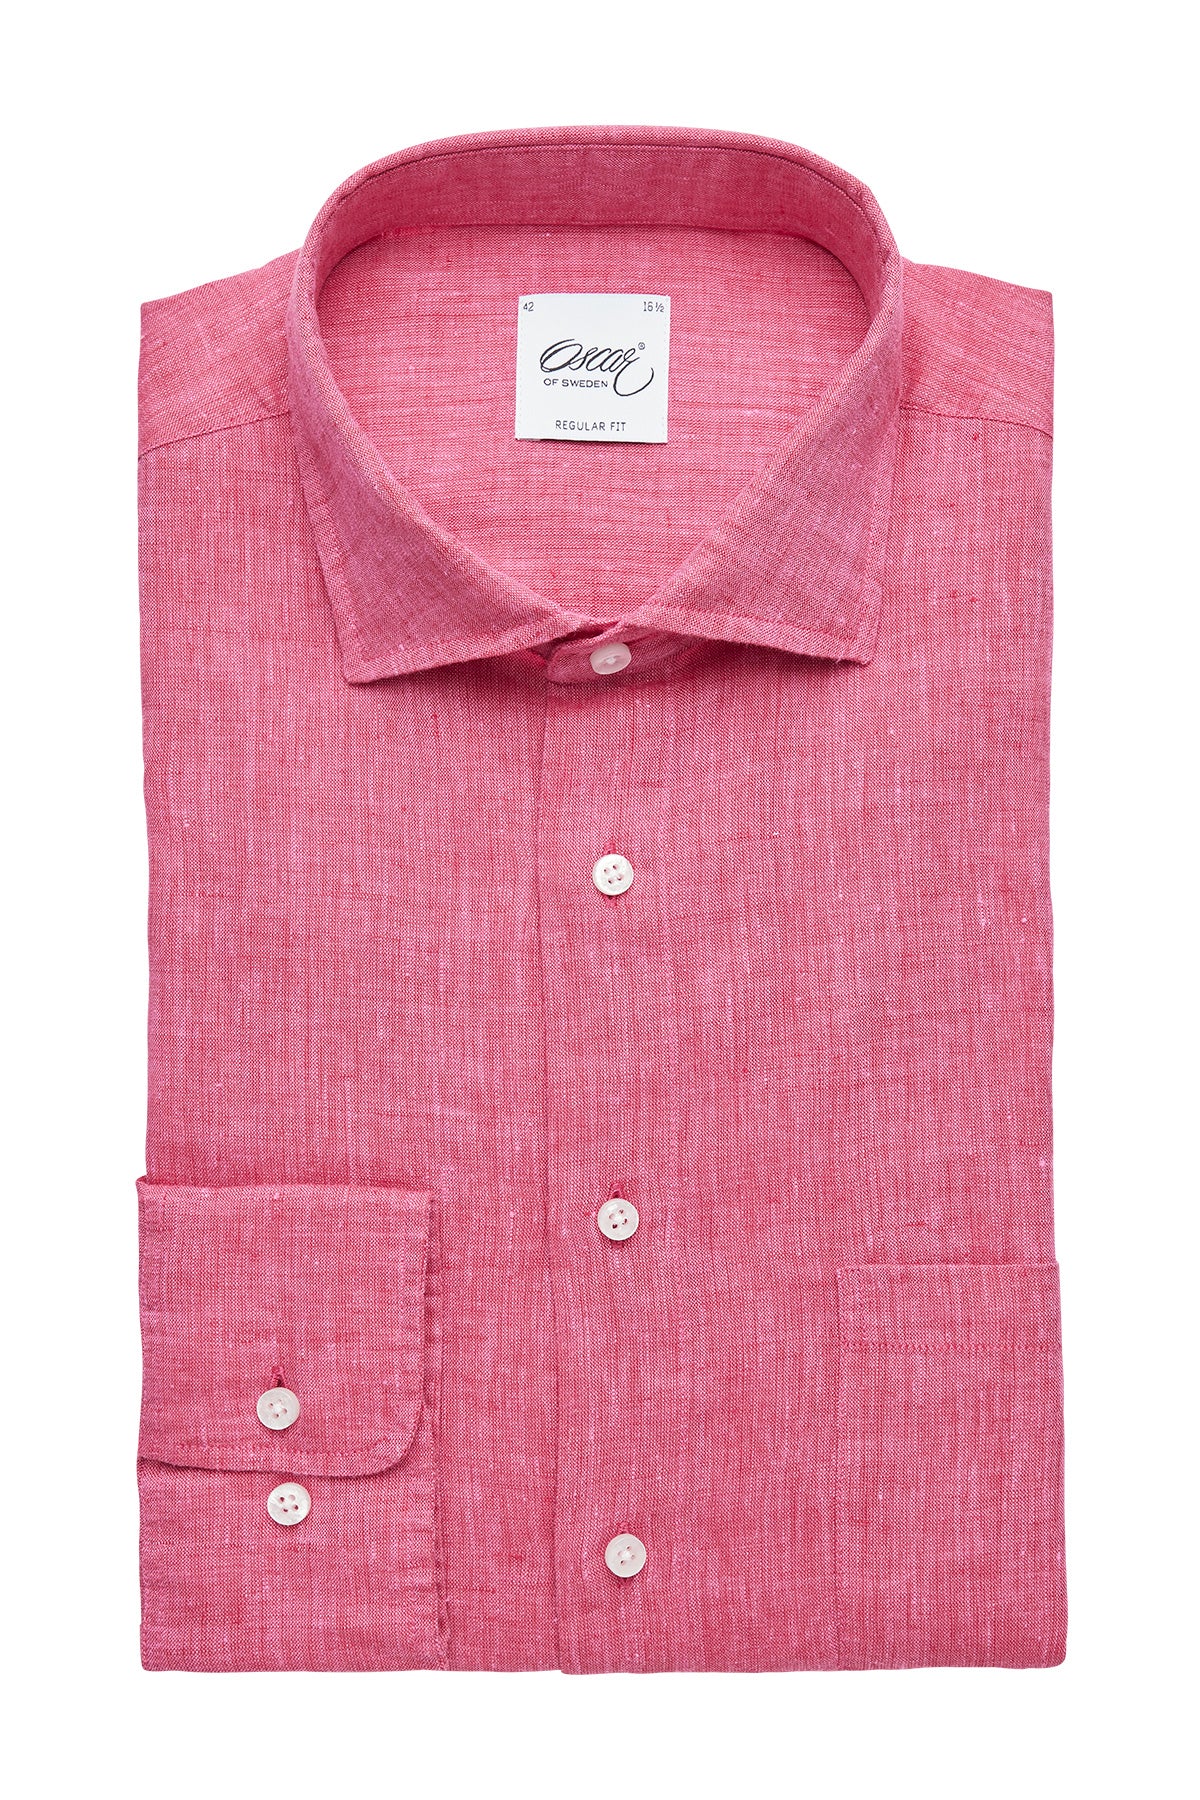 Pink regular fit linen shirt